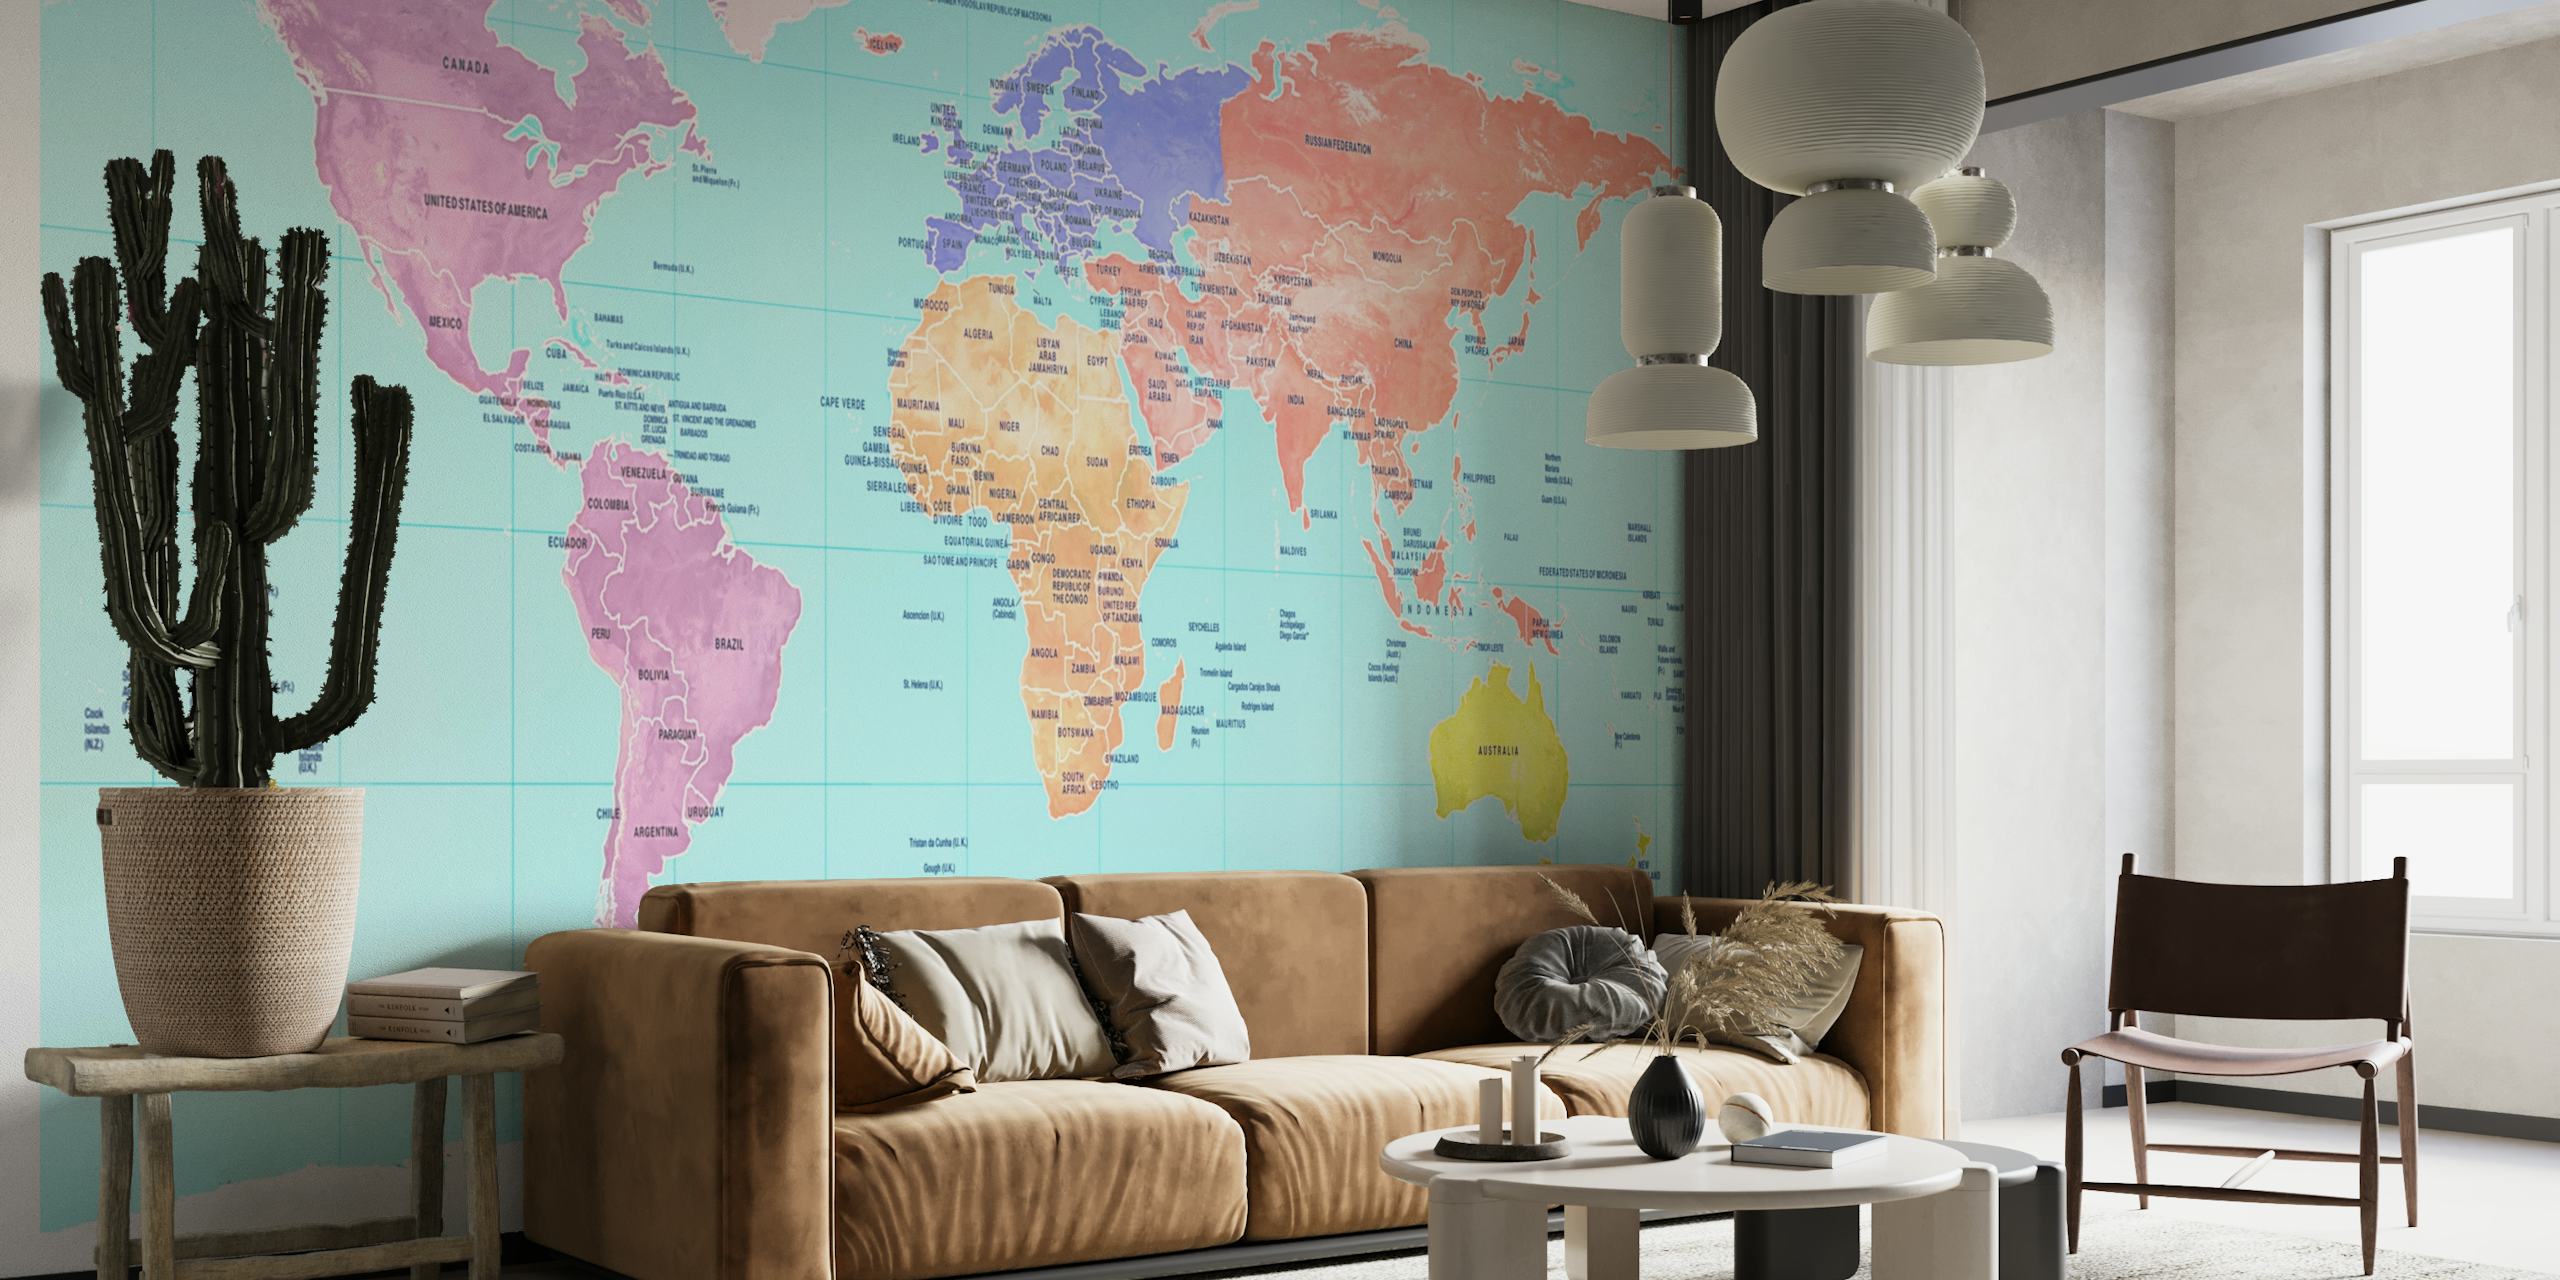 Carta da parati colorata con mappa del mondo che mostra i continenti in diverse tonalità